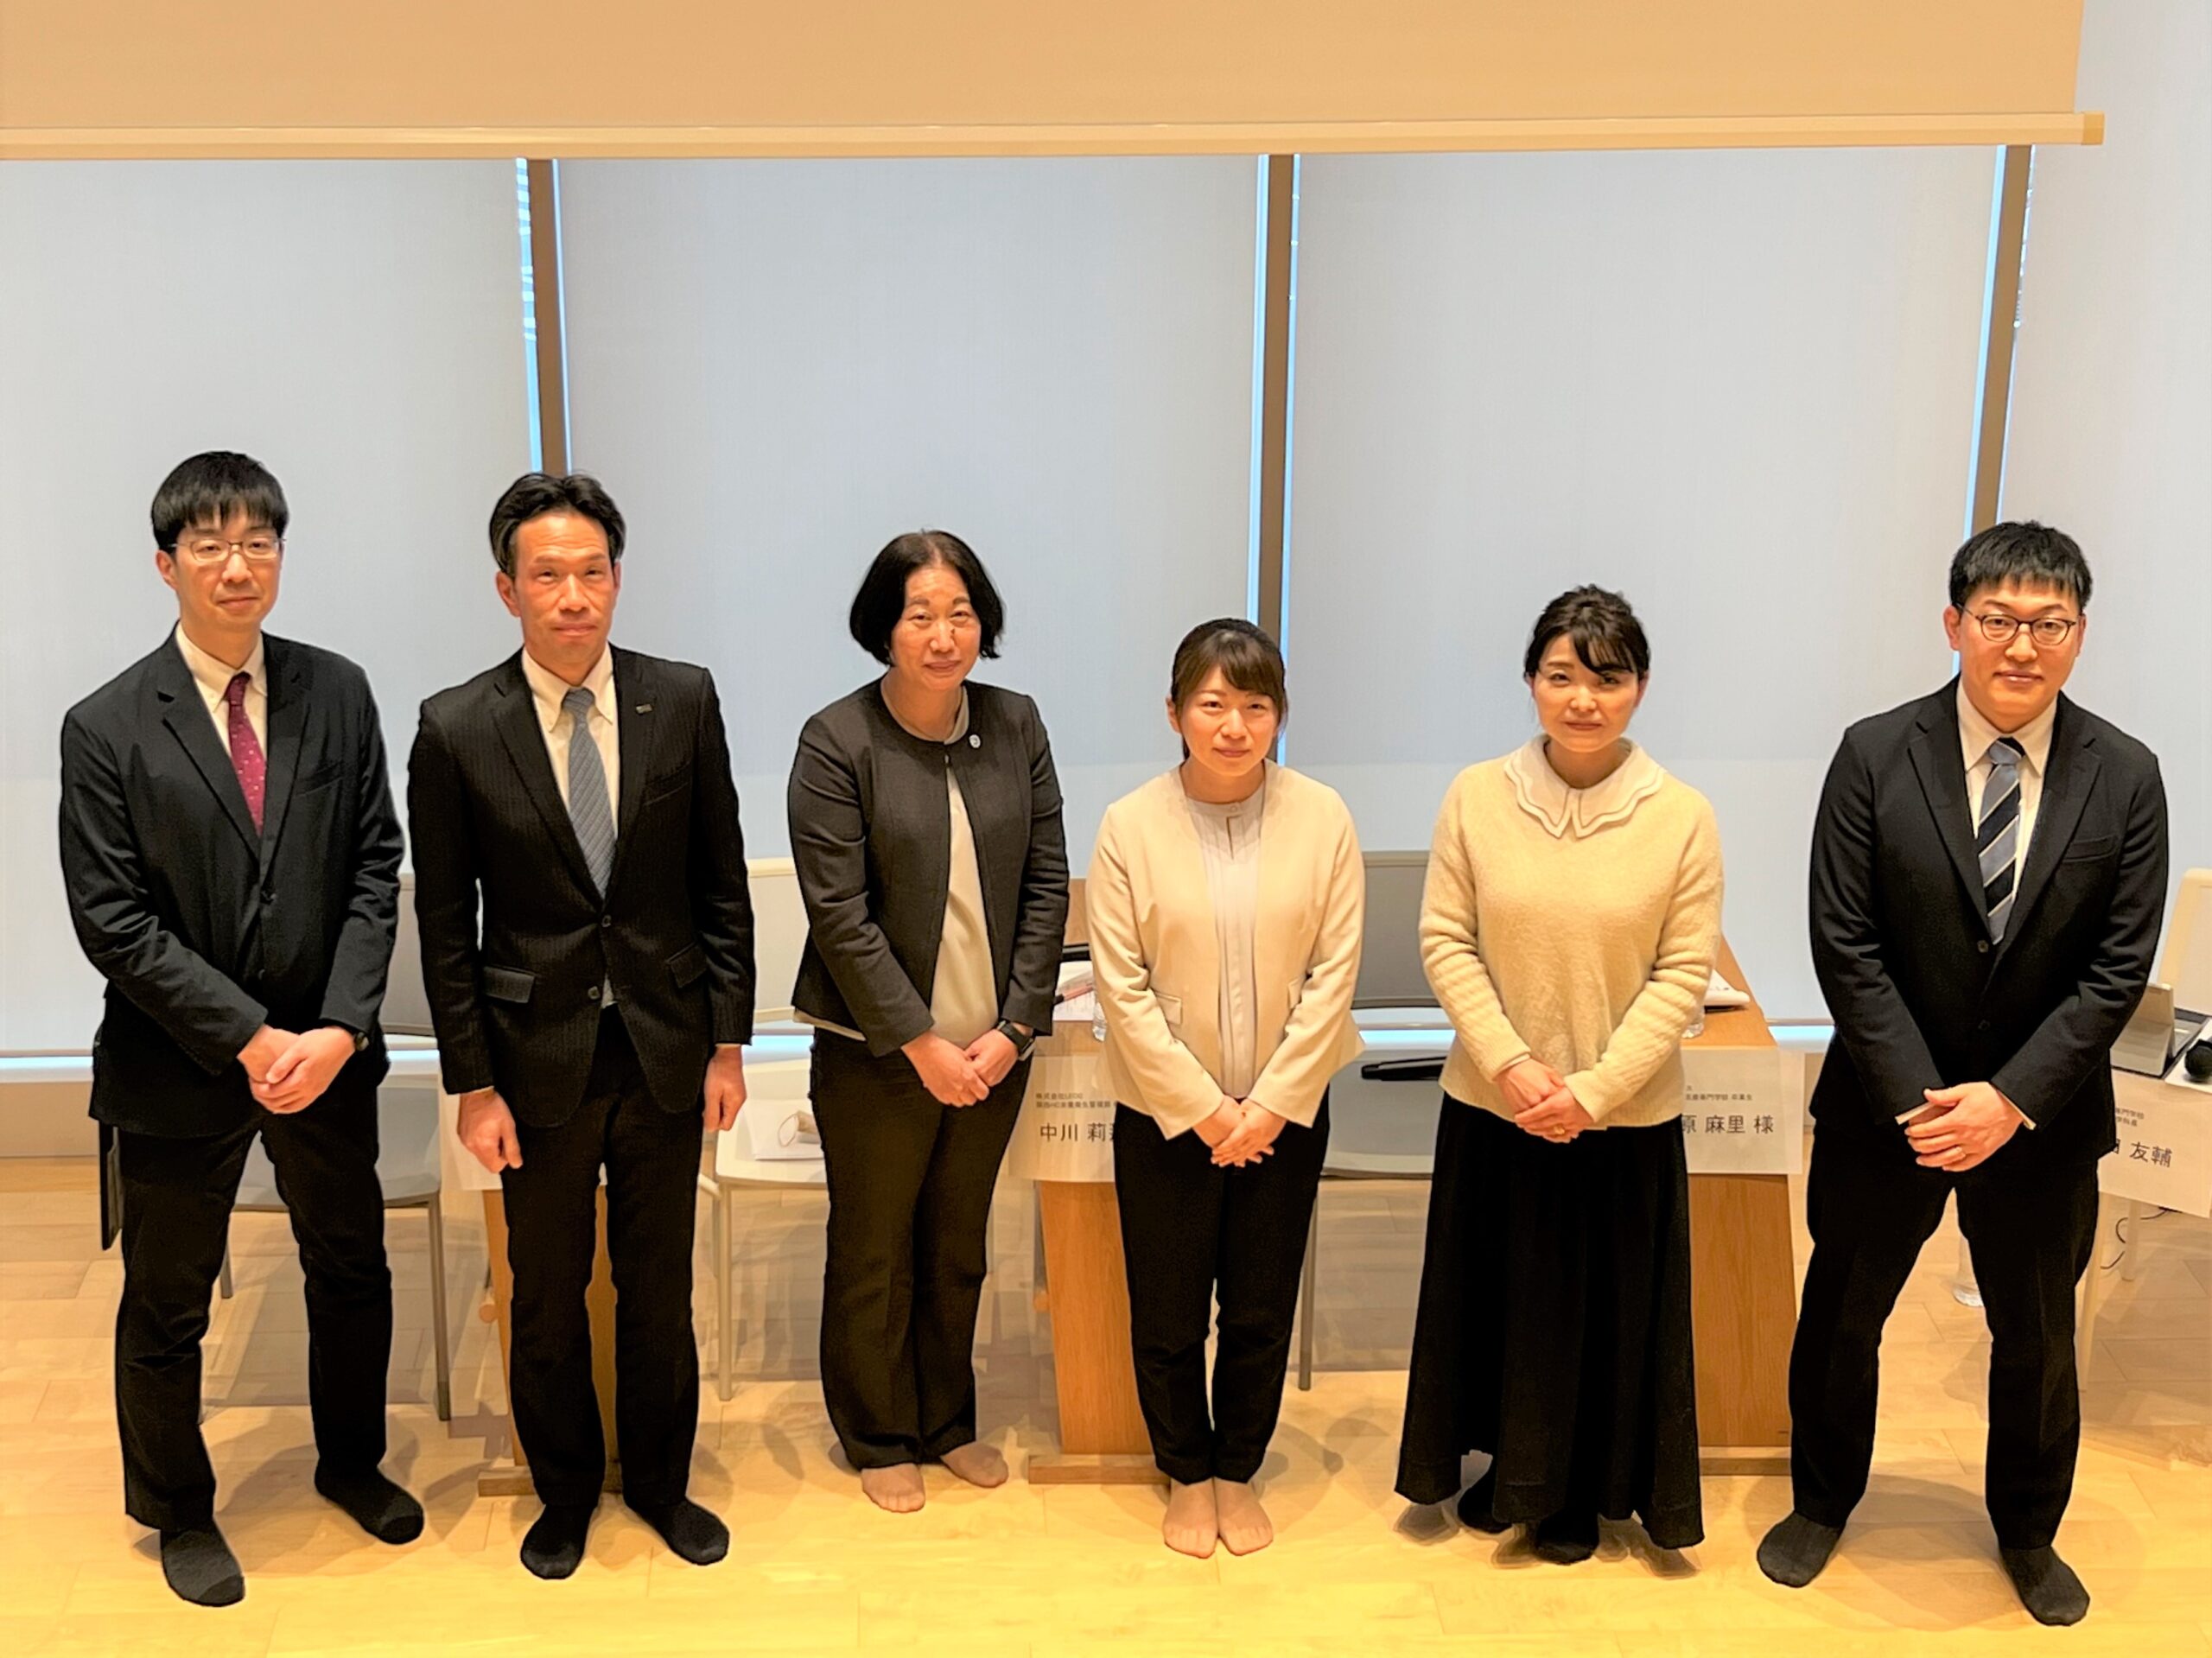 京都栄養医療専門学校主催の公開シンポジウムに、栄養衛生管理部 中川 莉那がパネリストとして登壇